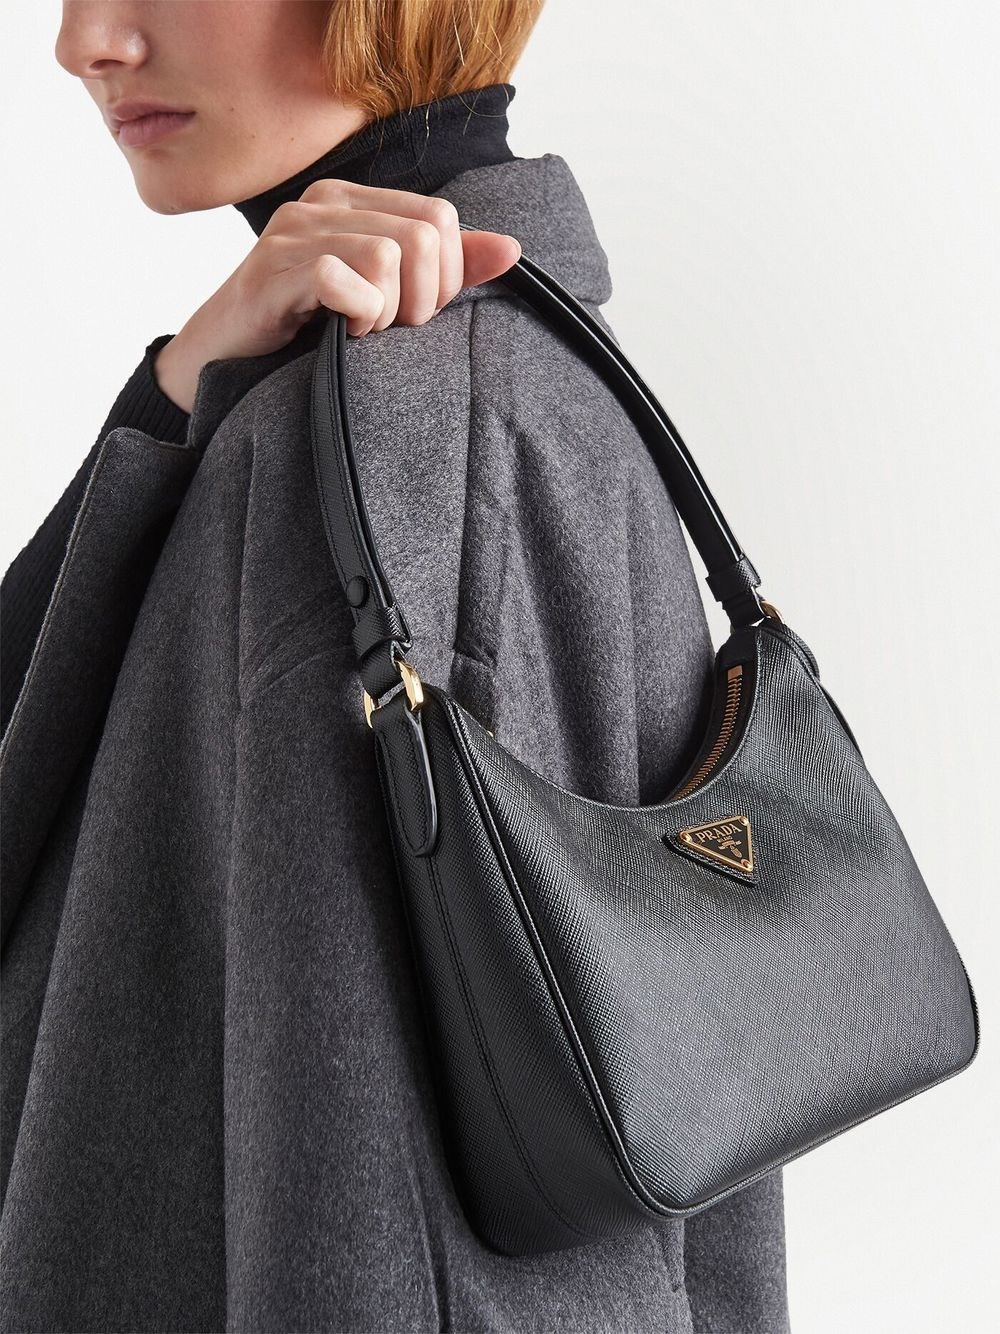 Prada Shoulder Bags Black Friday Sale - Black Womens Prada Re-edition 2005  Saffiano Leather Bag